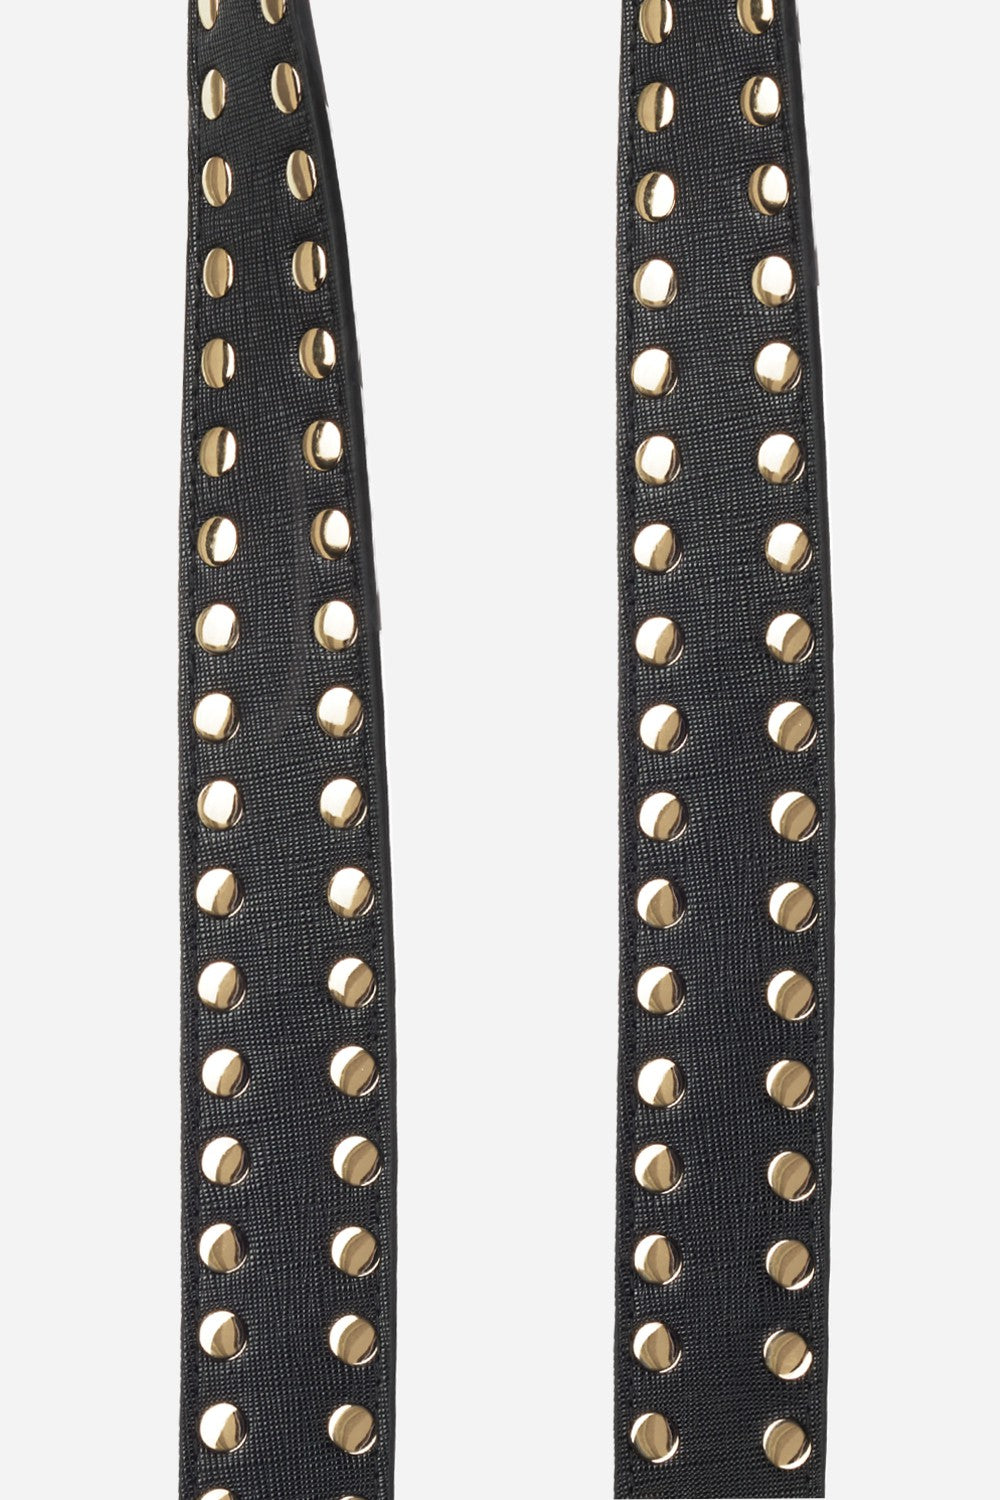 Chaine Longue Axelle Noir 120 cm